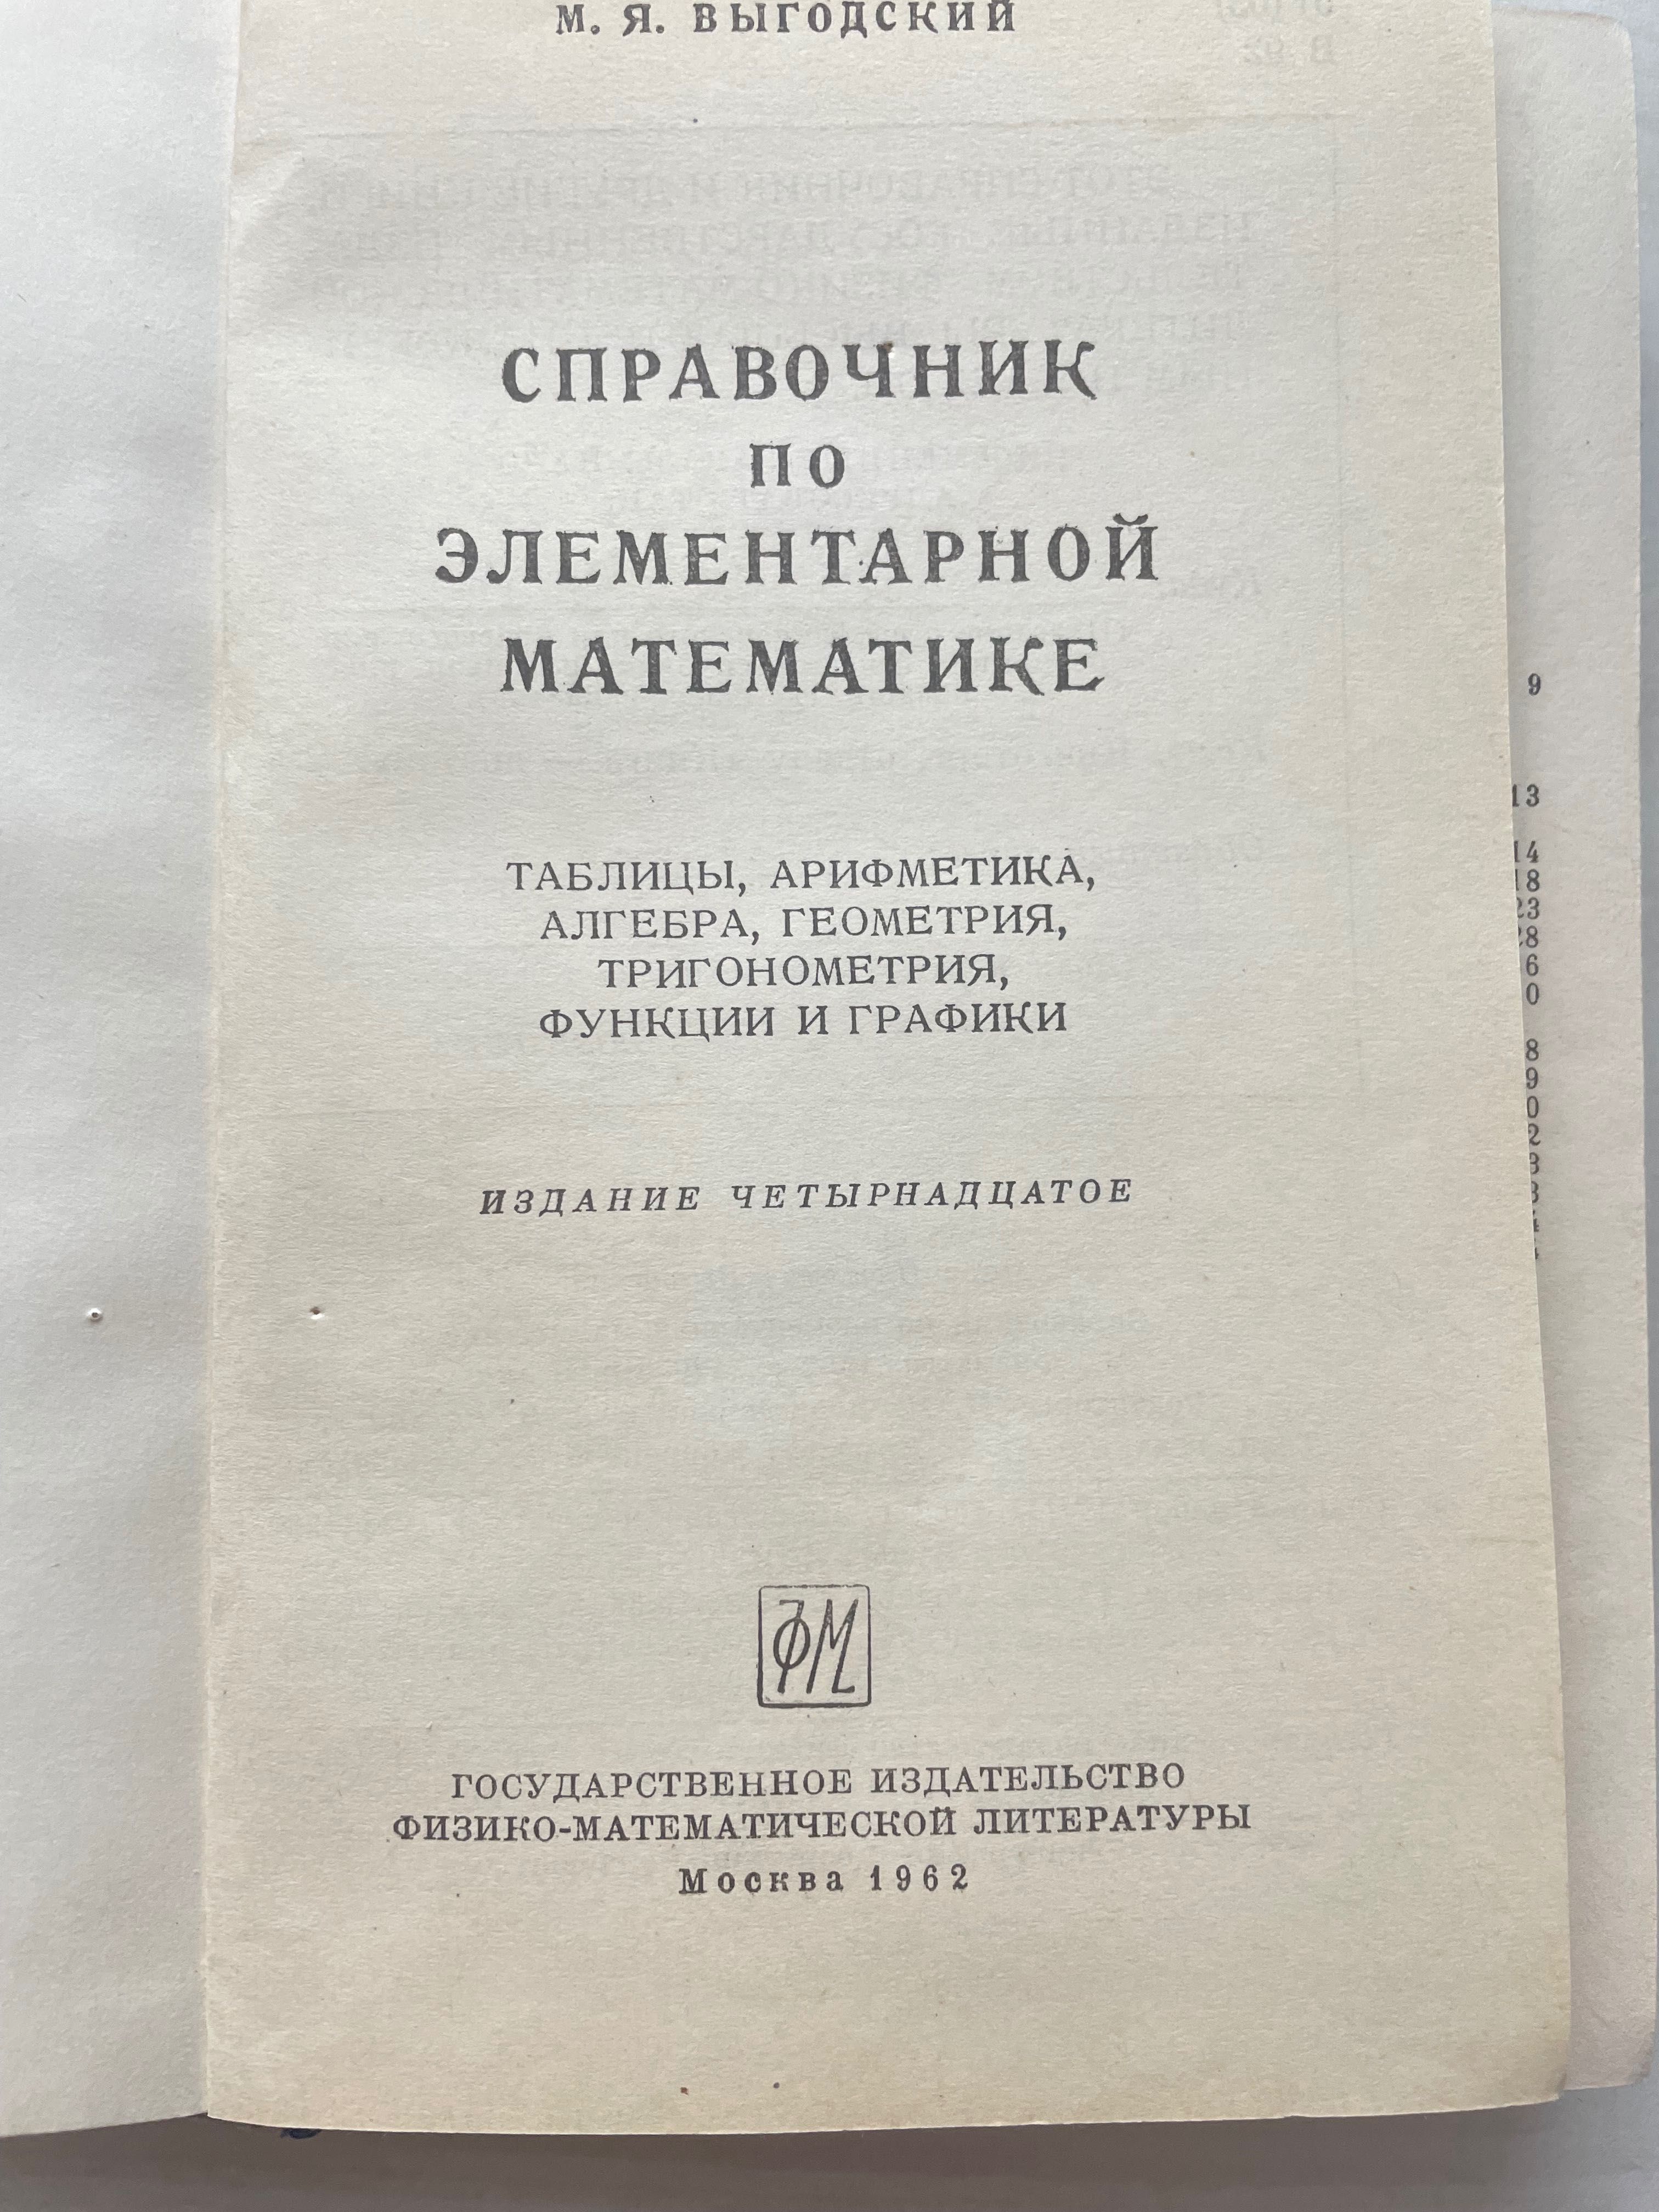 Справочник по элементарной математике, М.Я.Выгодский, 1962г.